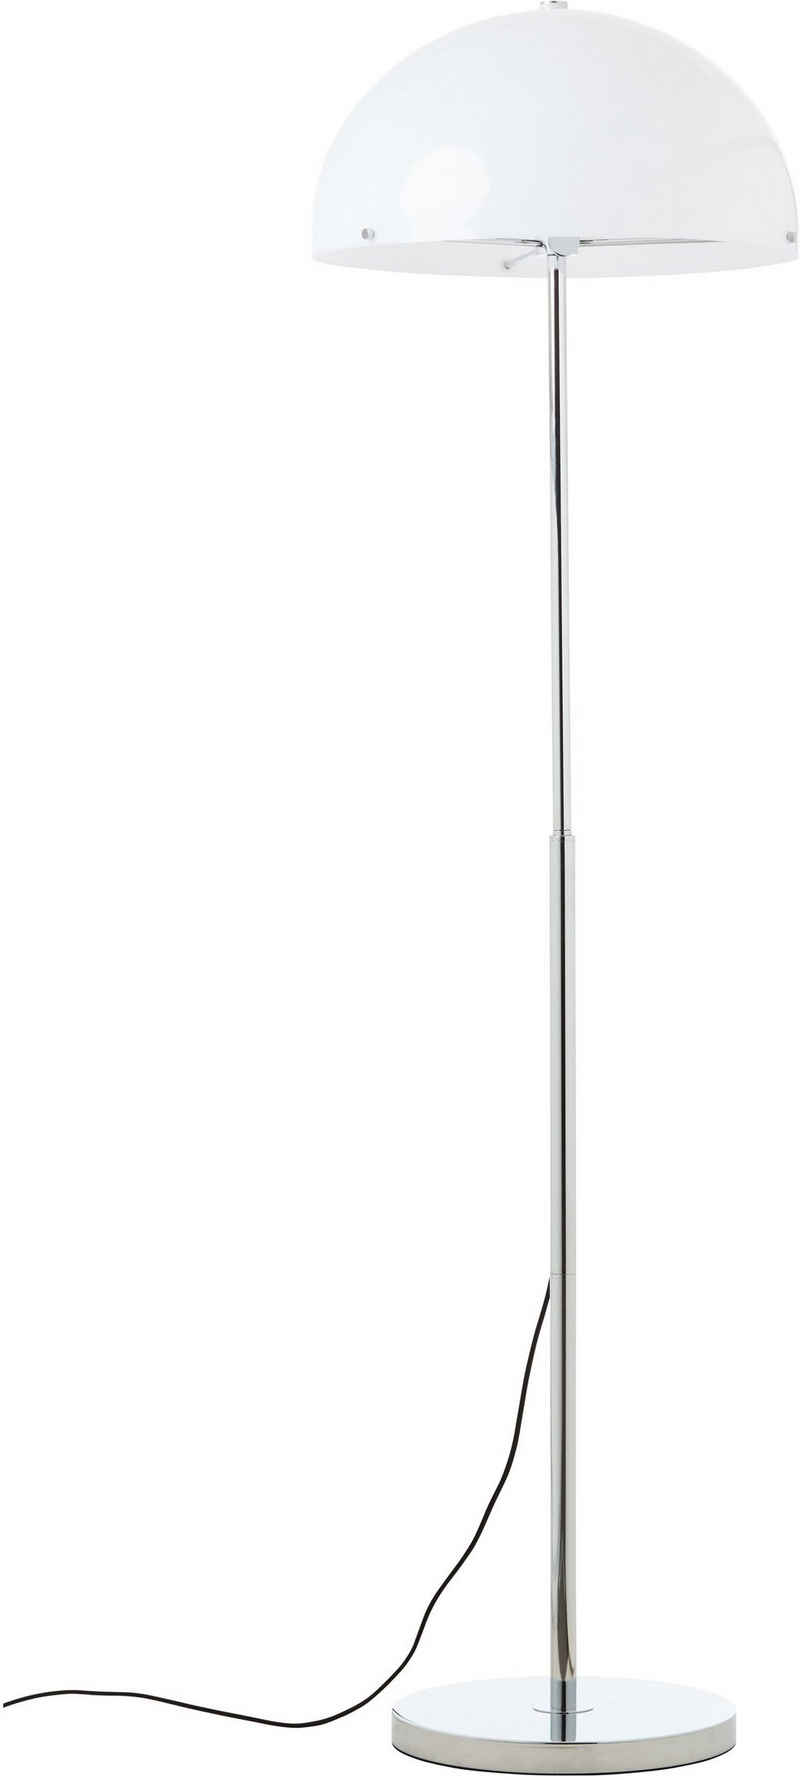 elbgestoeber Stehlampe »elbhelm«, chromfarben, mit weißem Schirm, höhenverstellbar, H: 140cm